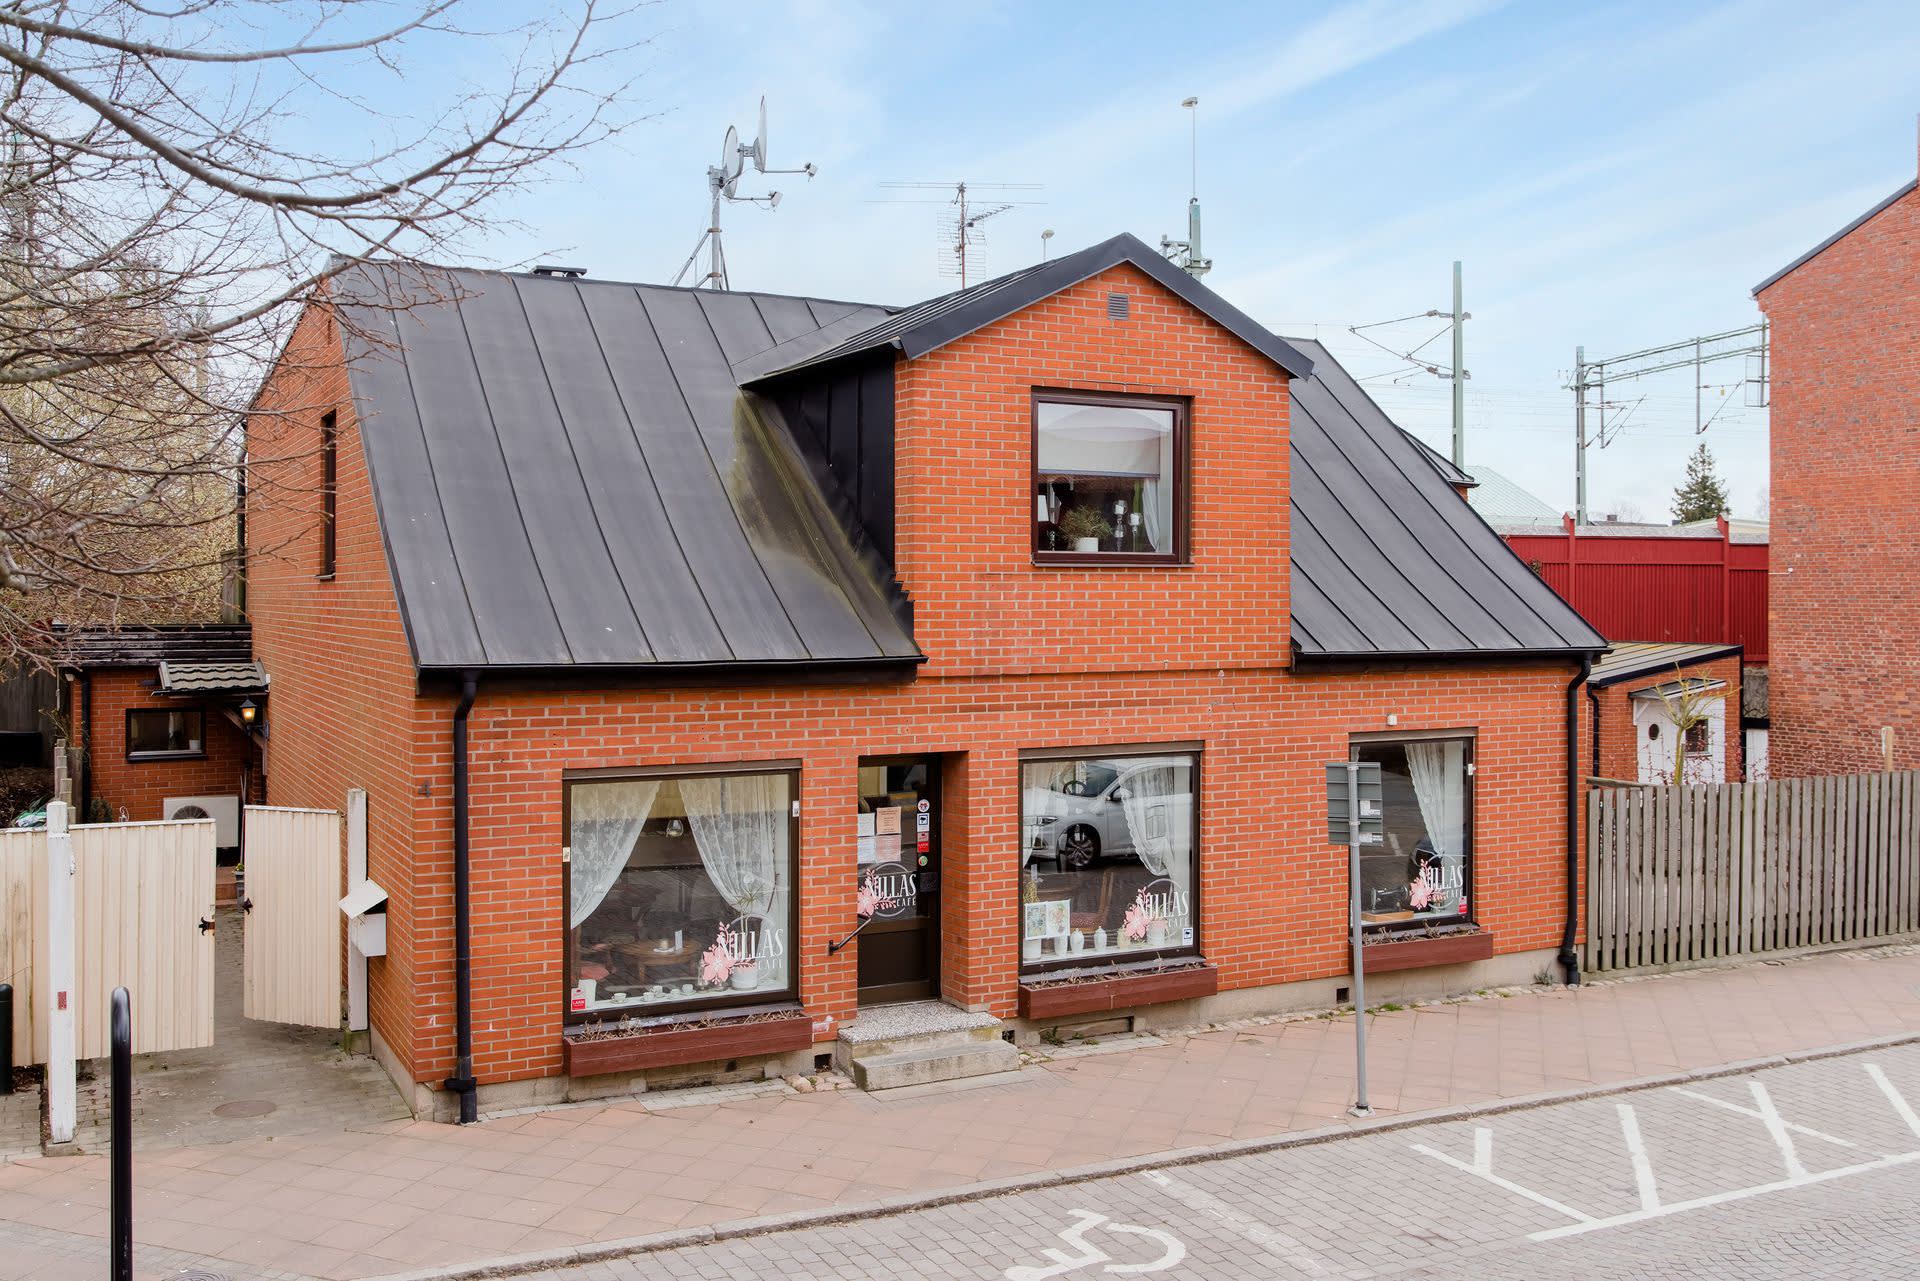 Välkomna till Mårtensgatan 4! Ett välkänt café som blivit en populär samlingspunkt i byn. Ypperligt läge för att bedriva någon form av verksamhet